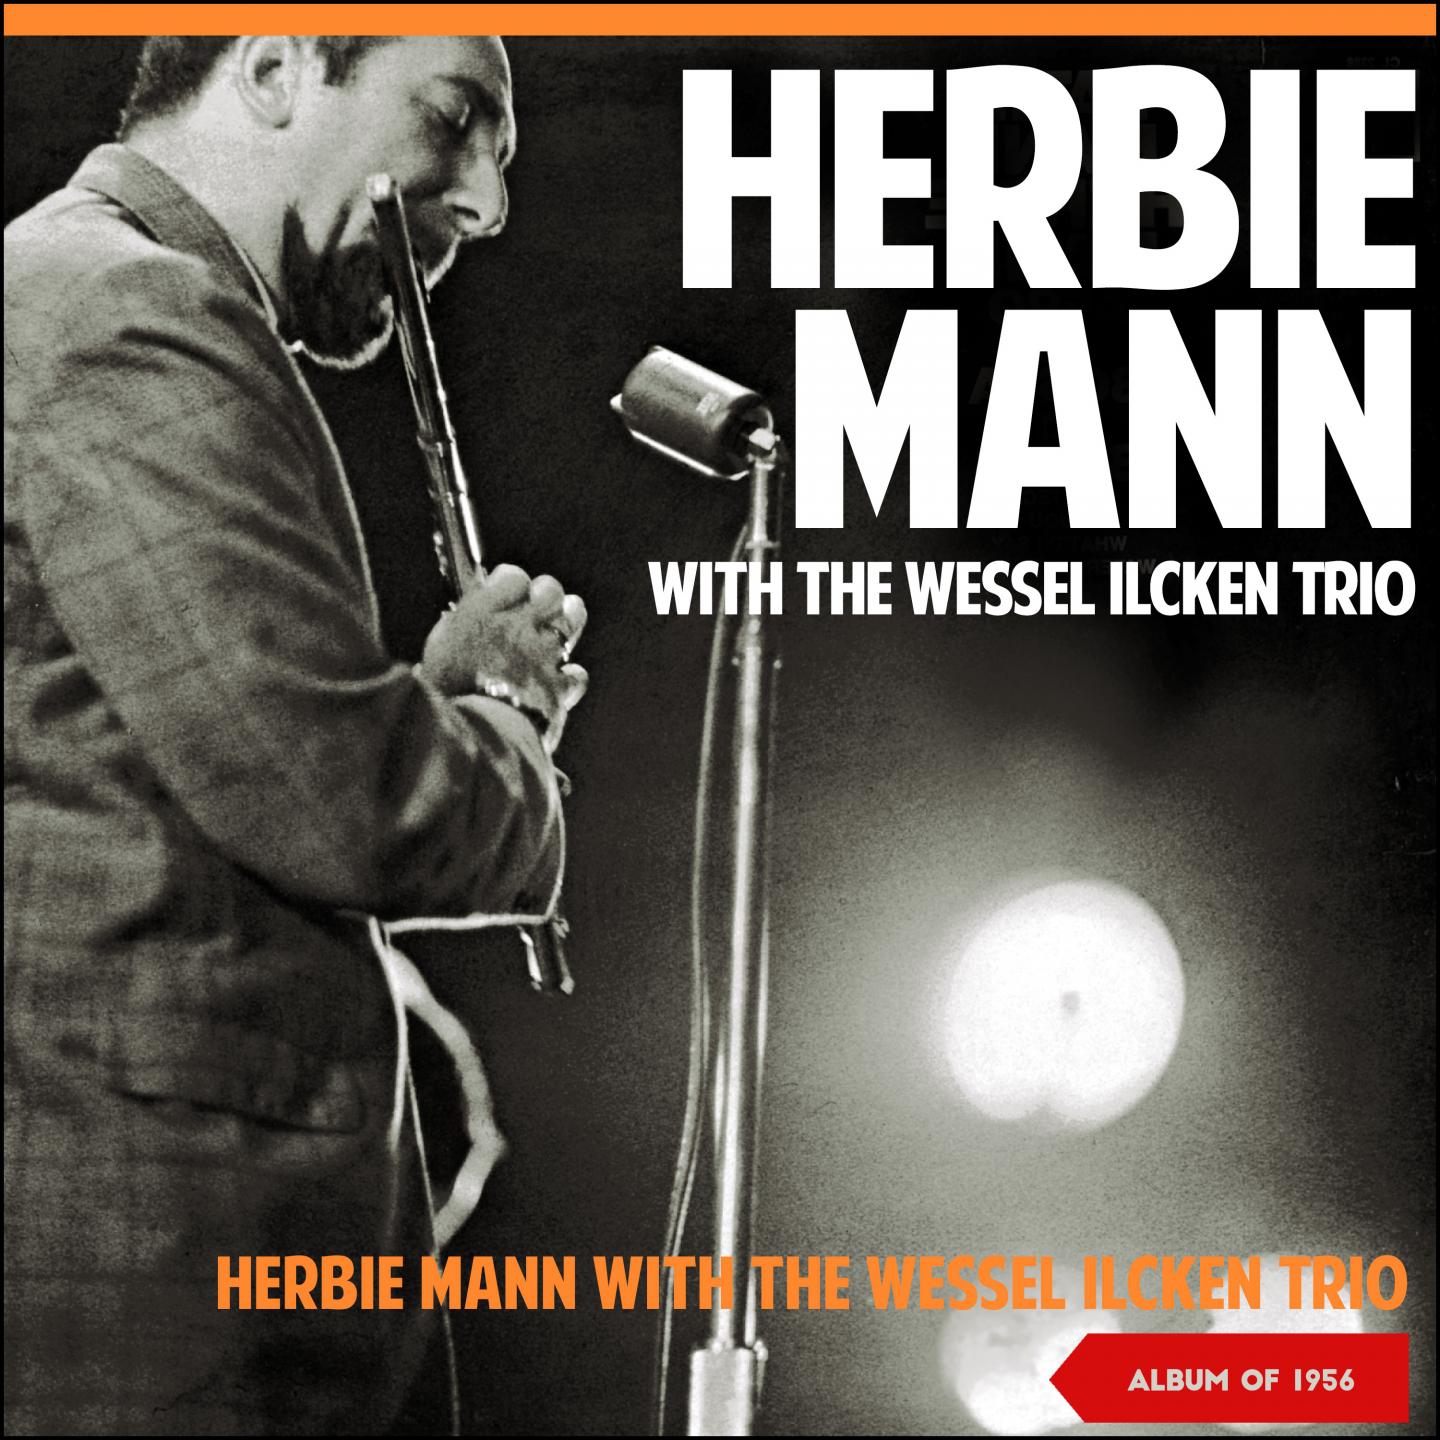 Herbie Mann with the Wessel Ilcken Trio (Album of 1956)